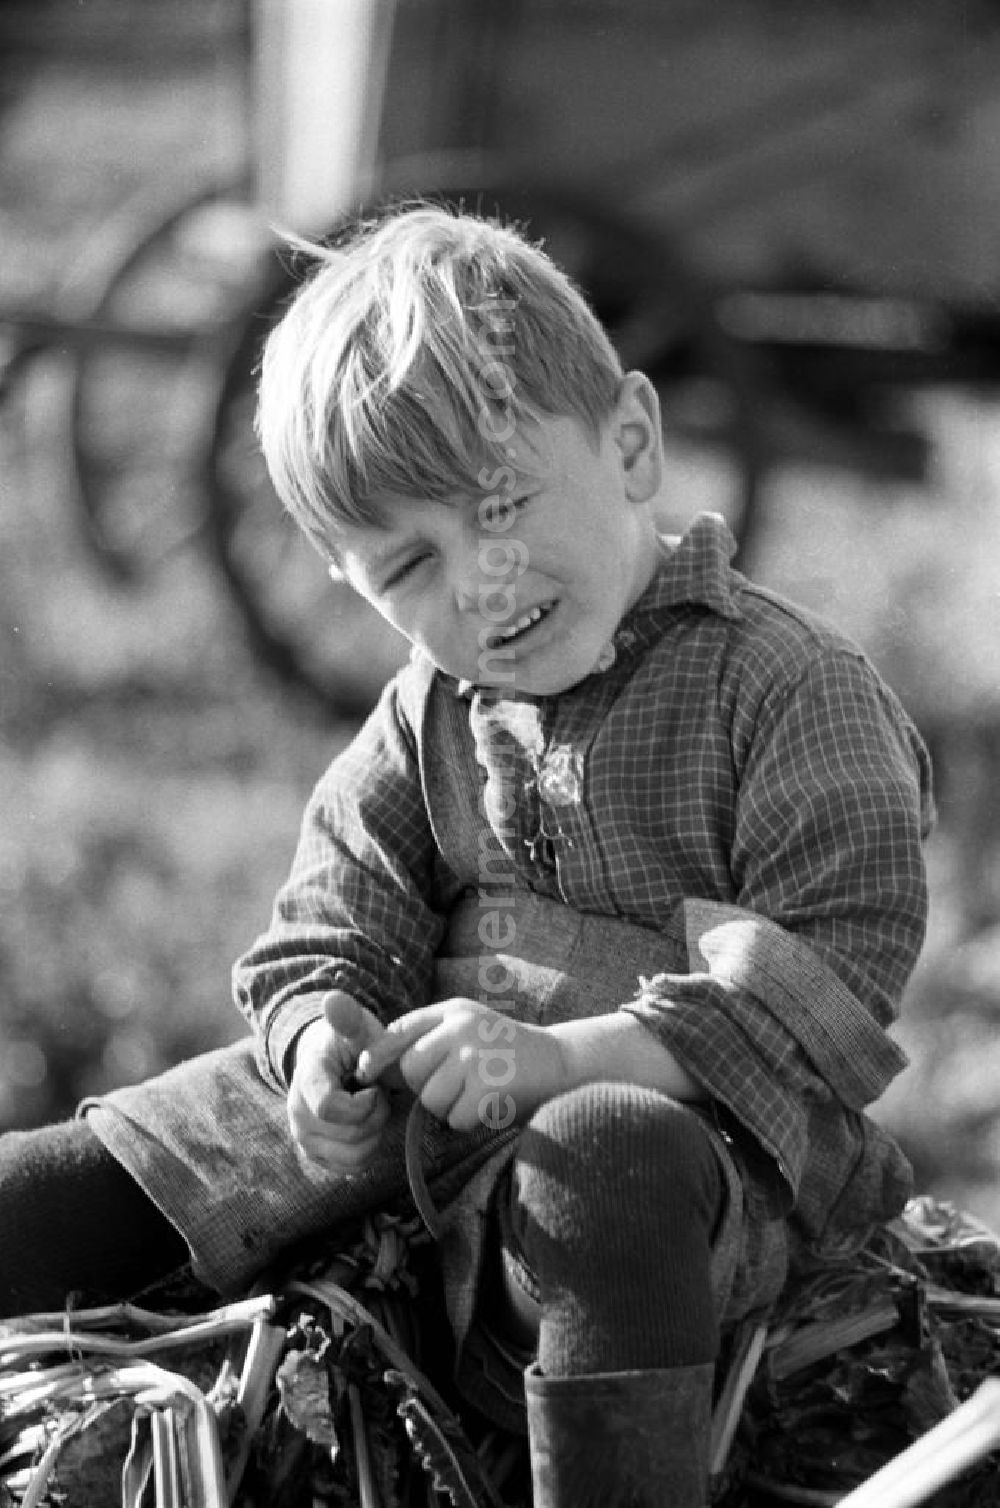 GDR photo archive: Leipzig - Ein kleiner Junge sitzt auf einem Haufen aus Rübenblättern. Während die Mütter bei der Rübenernte auf dem Land mithelfen müssen, spielen die Kinder unter sich.